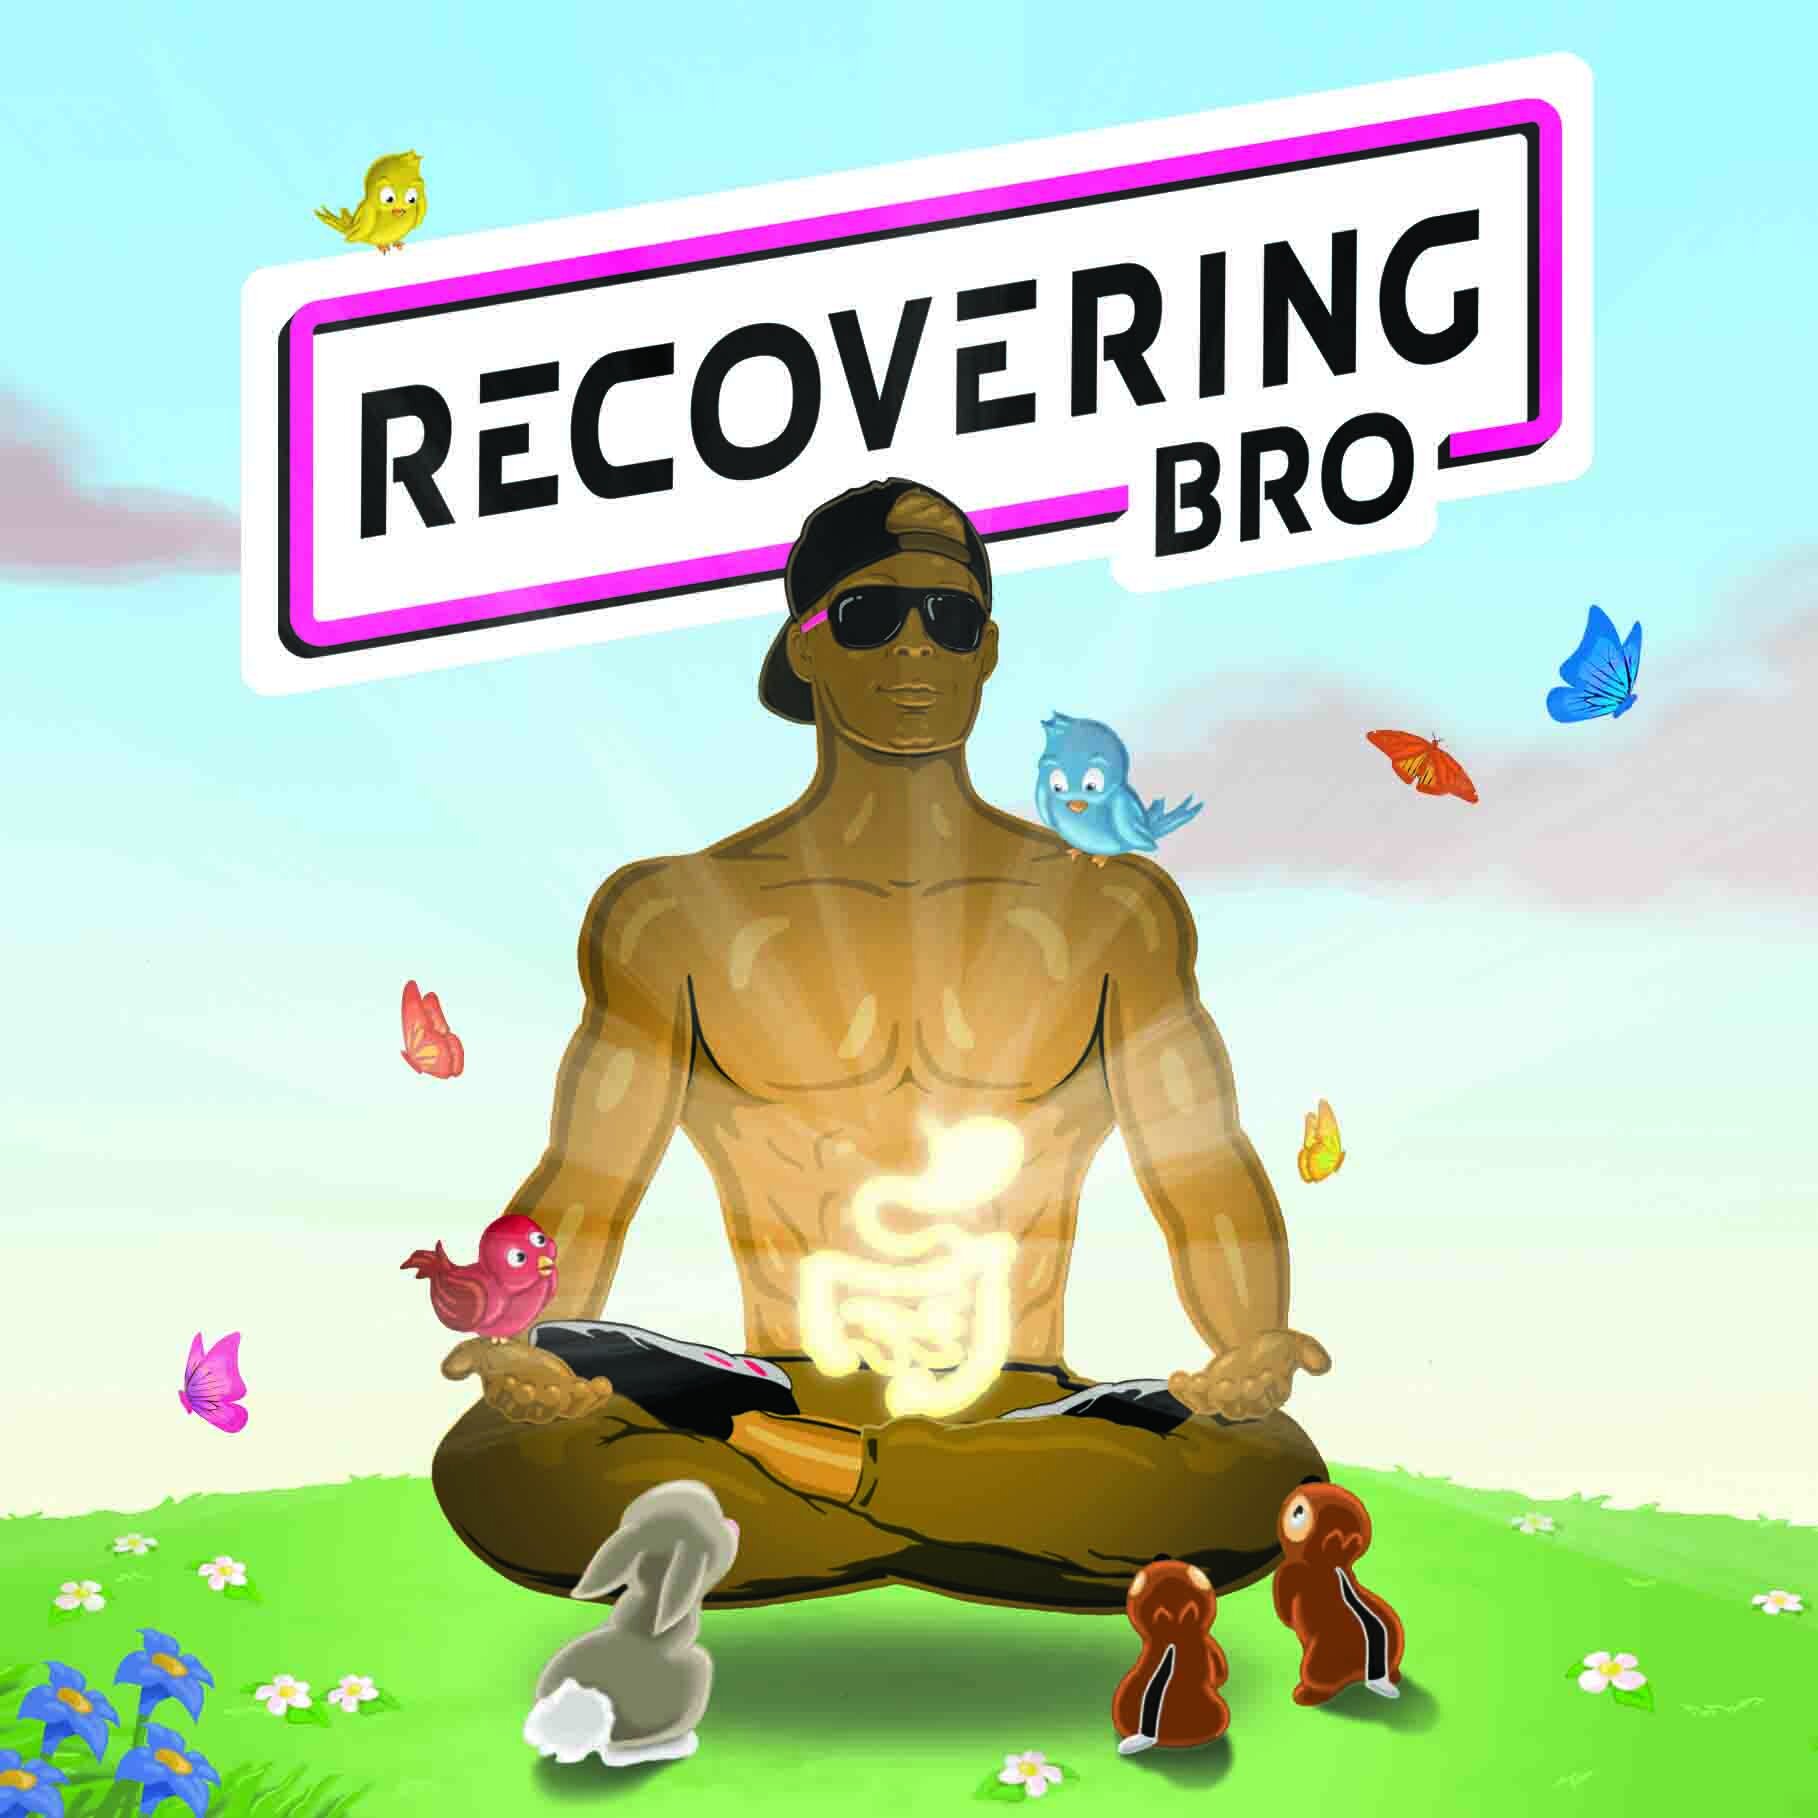 Innard_Peace_Recovering_Bro